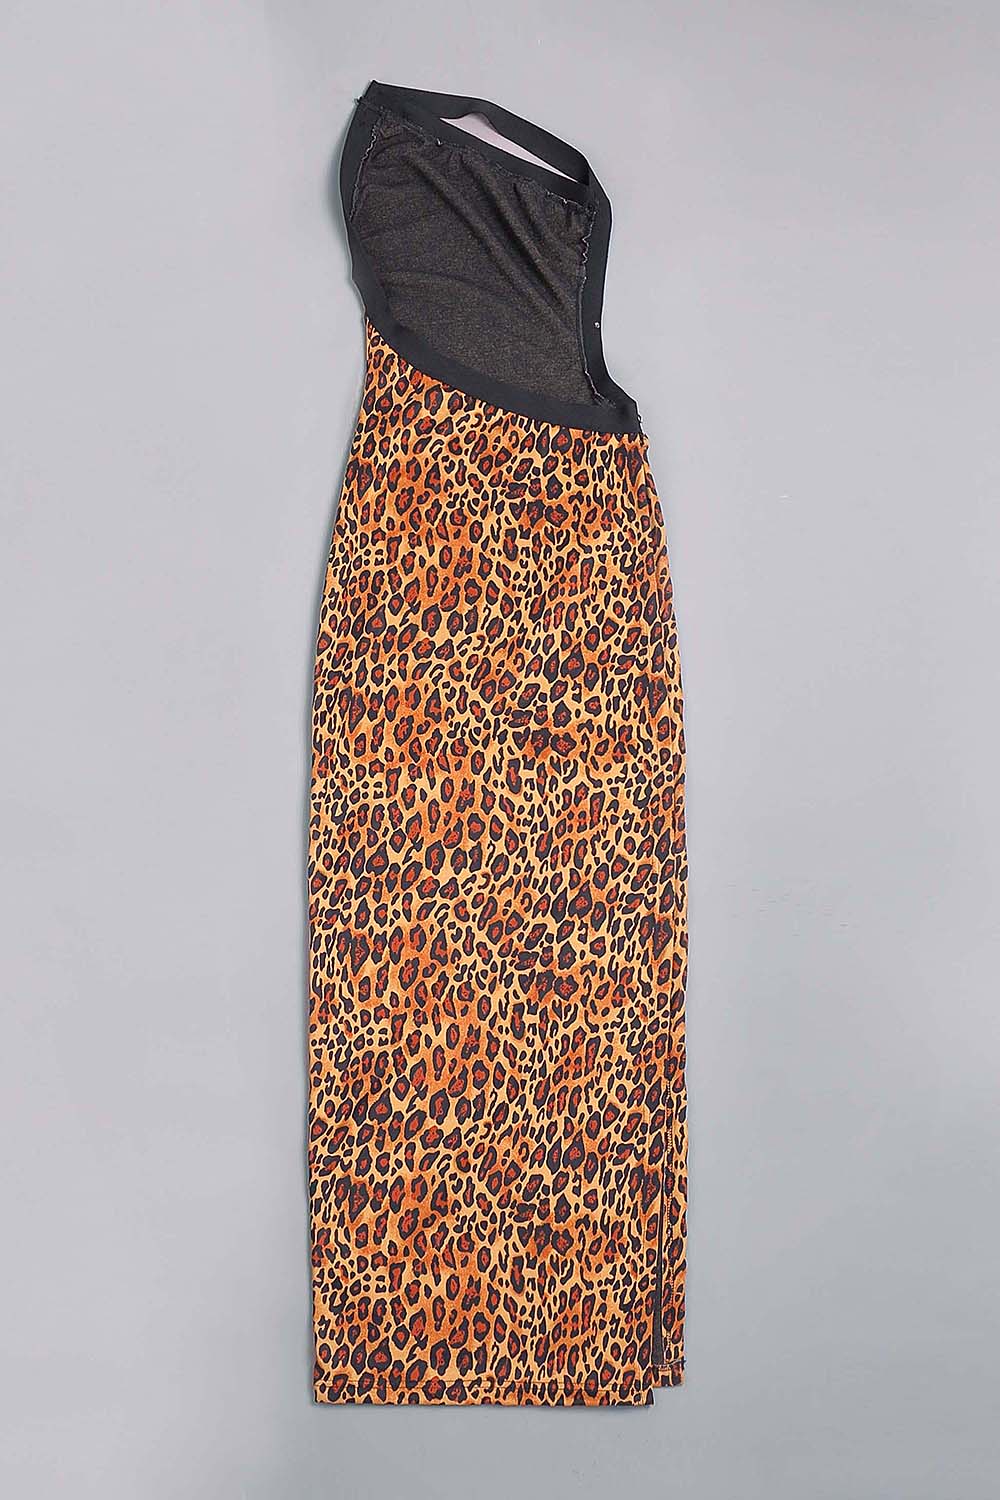 Vestido largo con abertura alta y un hombro de leopardo